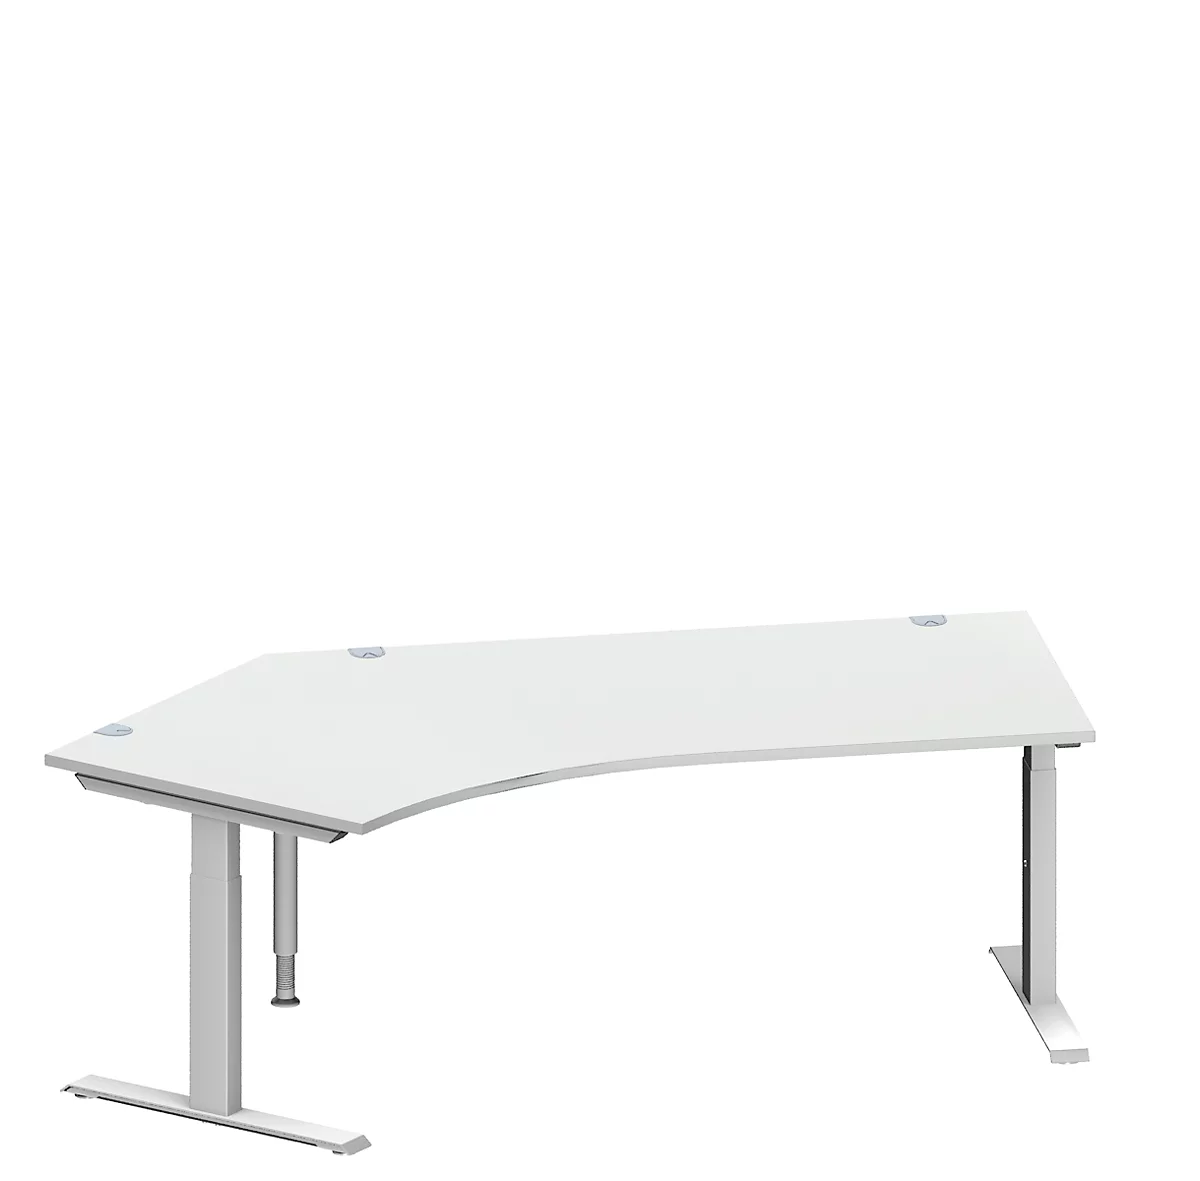 Schäfer Shop Genius escritorio angular MODENA FLEX, ángulo de 135° a la izquierda, tubo rectangular con pie en T, An 2165 x Pr 800/800 x Al 650-850 mm, aluminio gris claro/blanco